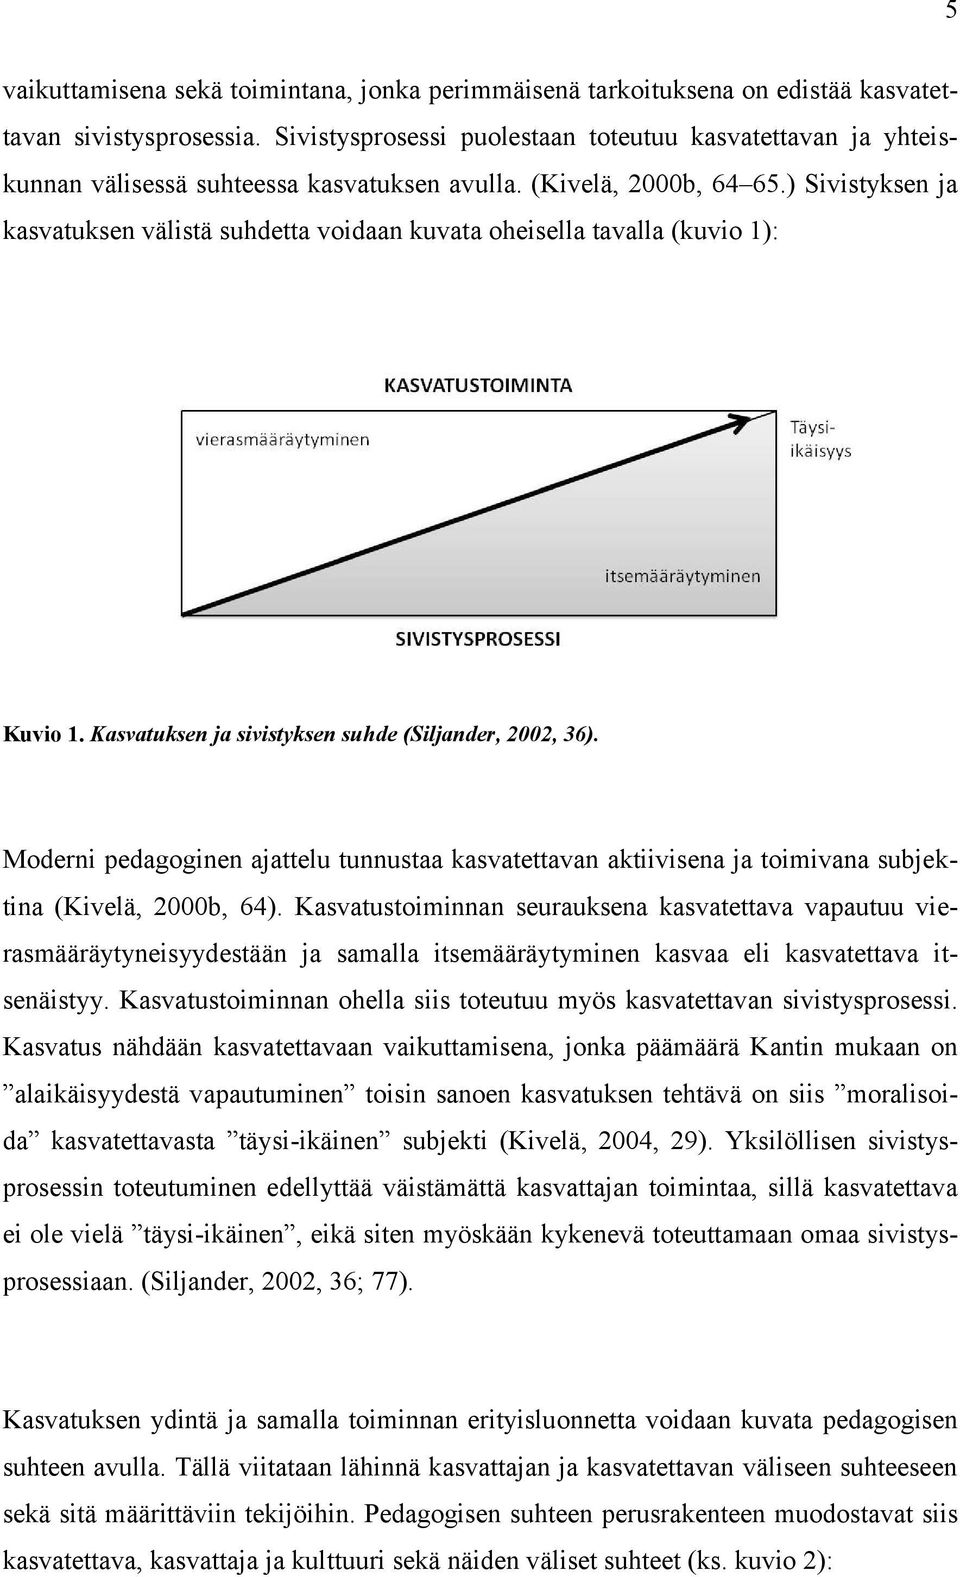 ) Sivistyksen ja kasvatuksen välistä suhdetta voidaan kuvata oheisella tavalla (kuvio 1): Kuvio 1. Kasvatuksen ja sivistyksen suhde (Siljander, 2002, 36).